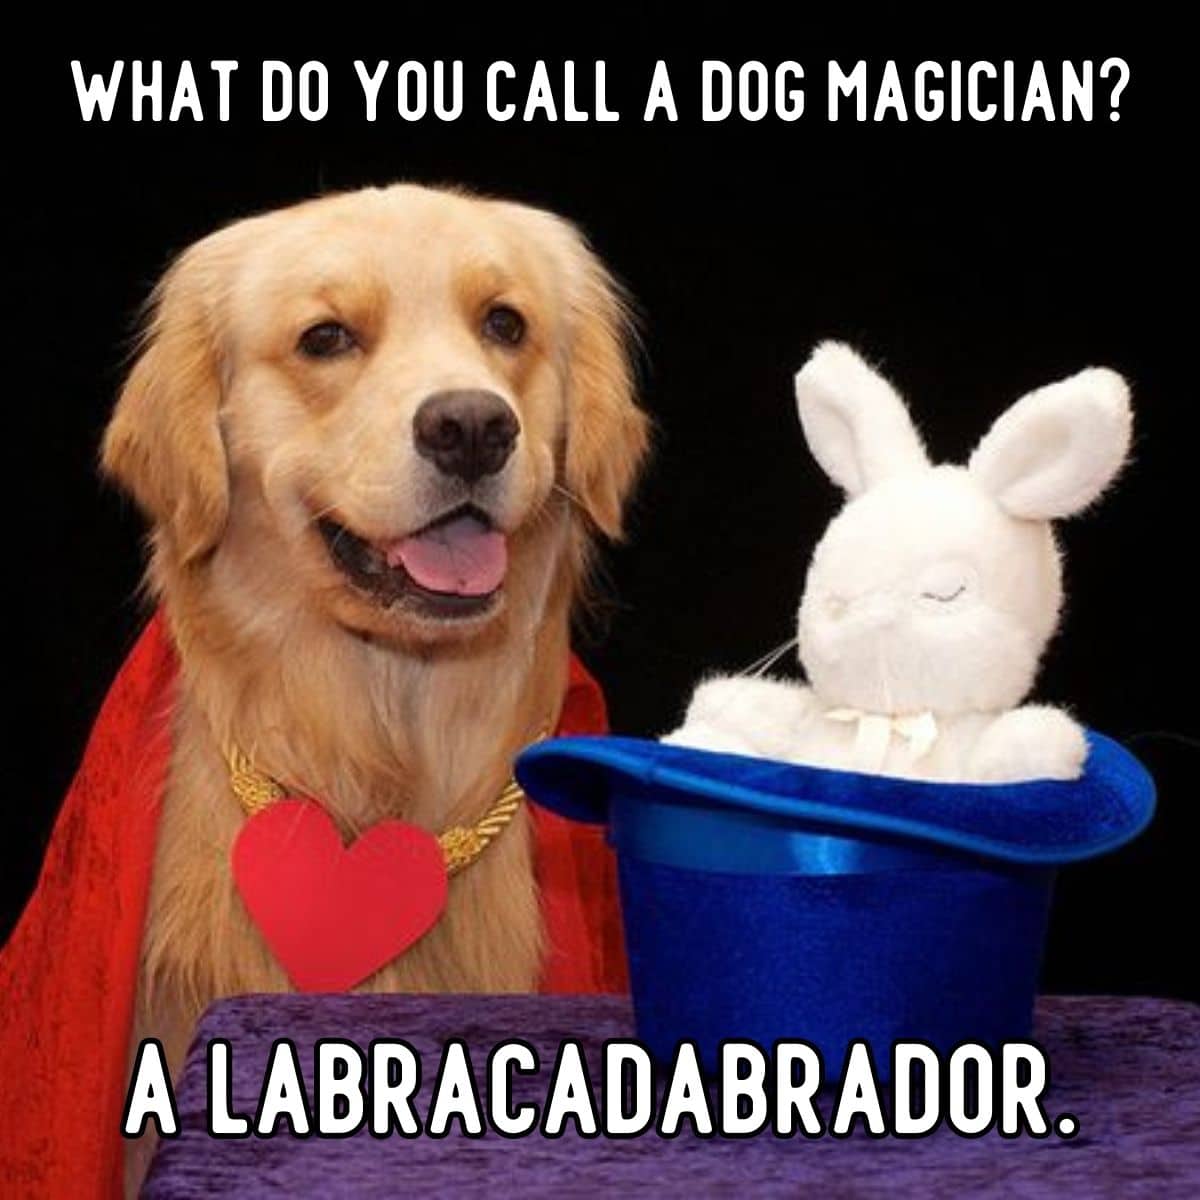 dog magician joke